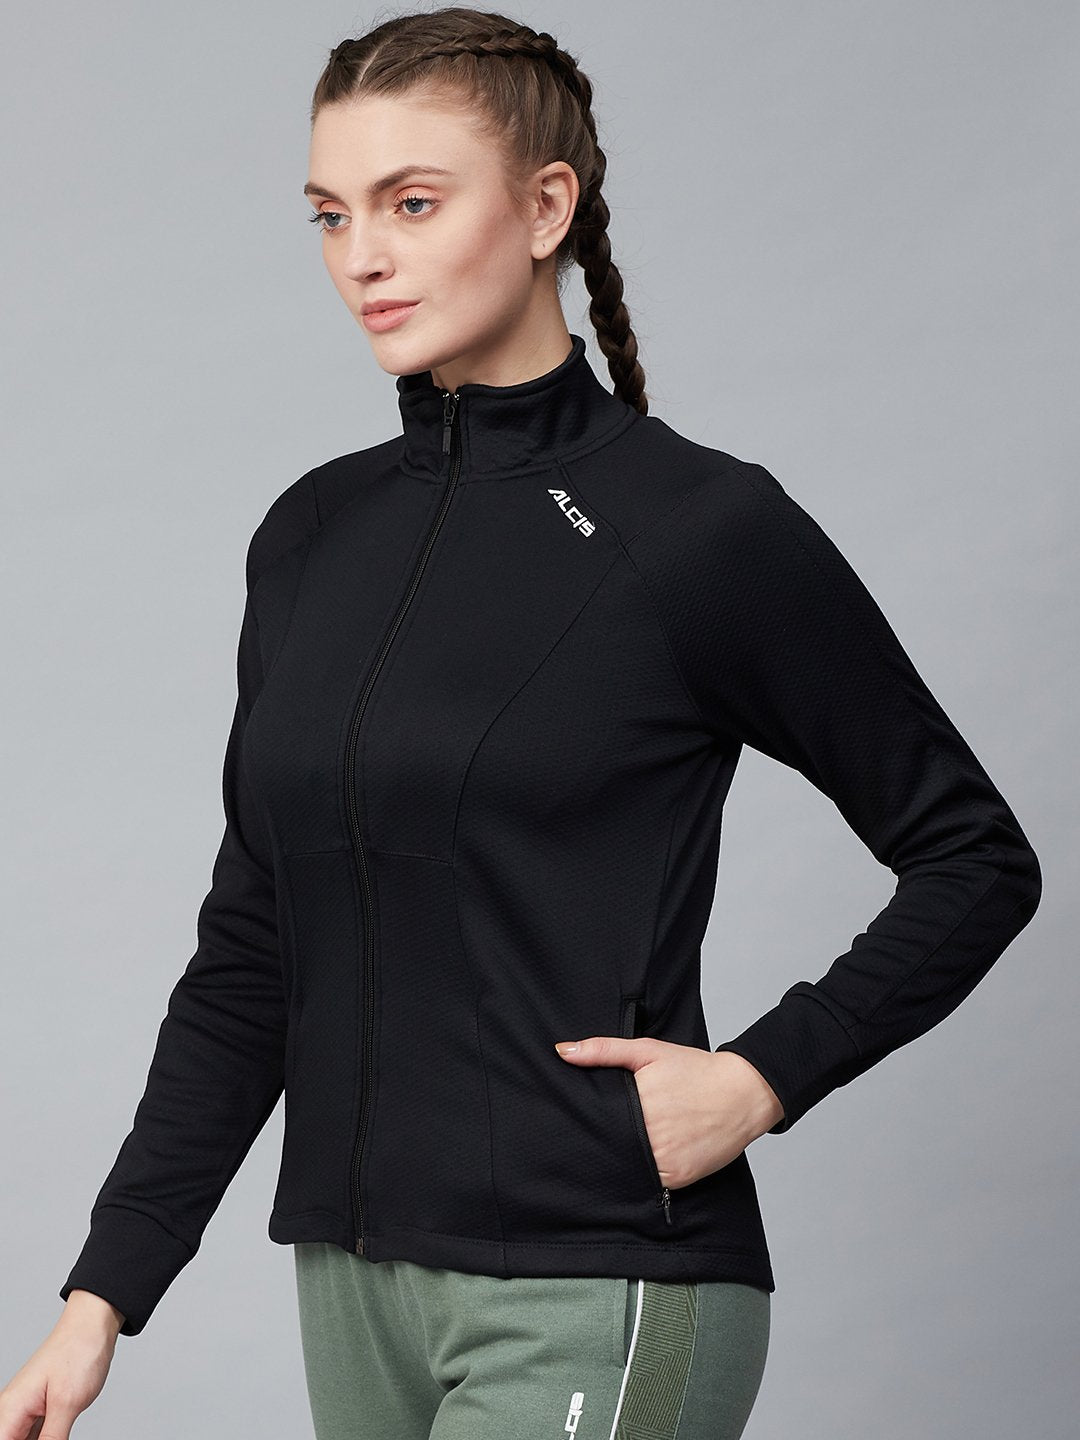 Alcis Women Black Solid Front-Open Sweatshirt